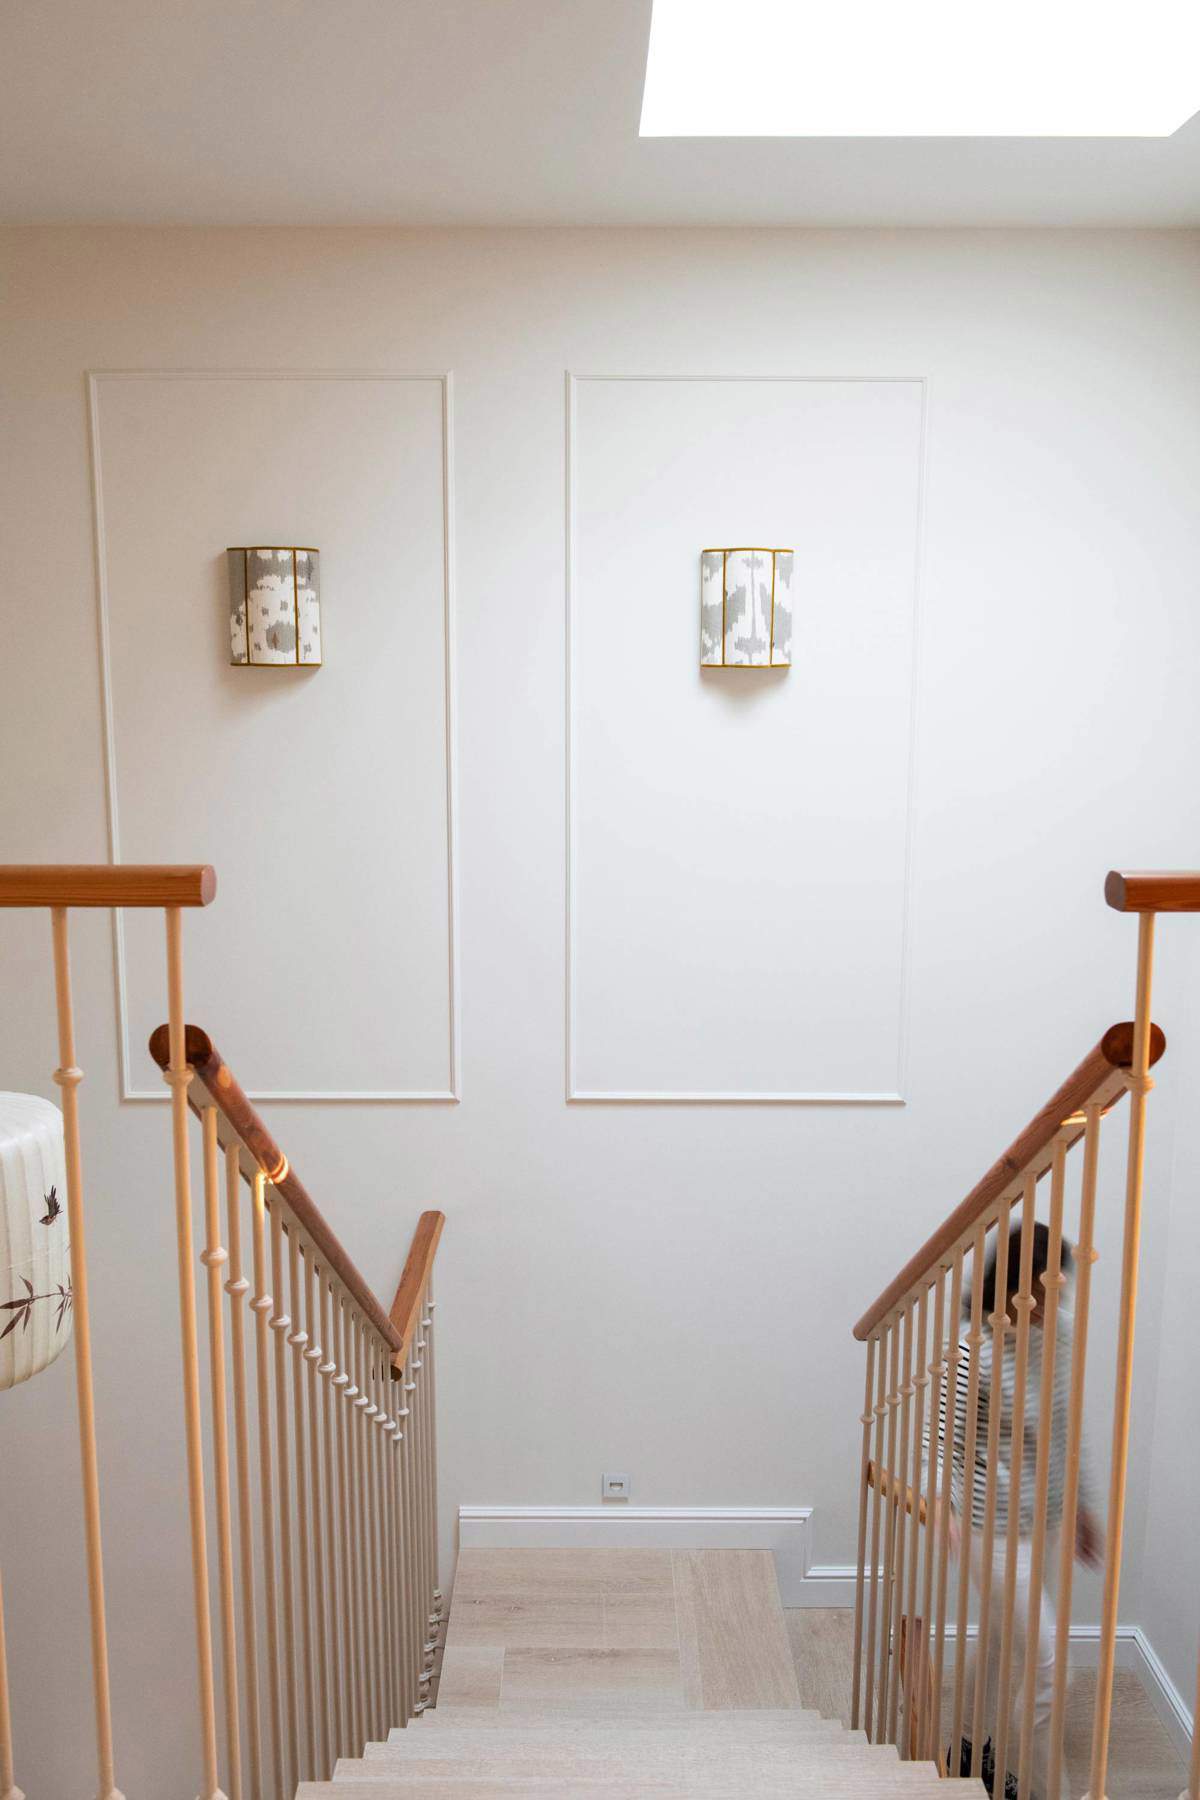 Descansillo de escalera decorado con apliques y molduras en la pared